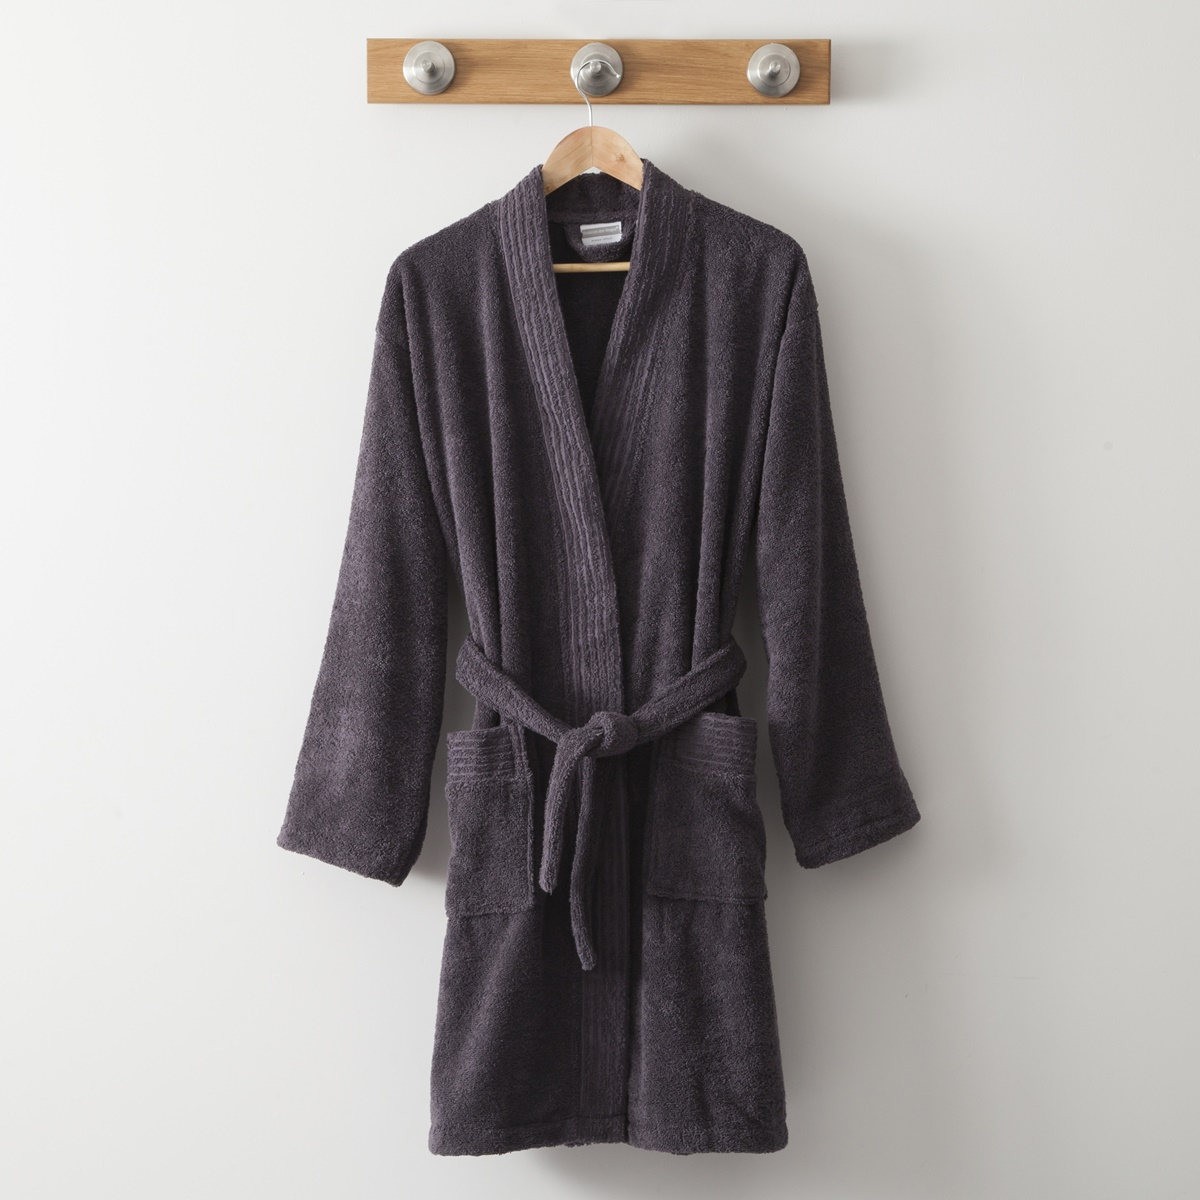 Cotton Kimono 420 Gr black | Bed linen | Tradition des Vosges